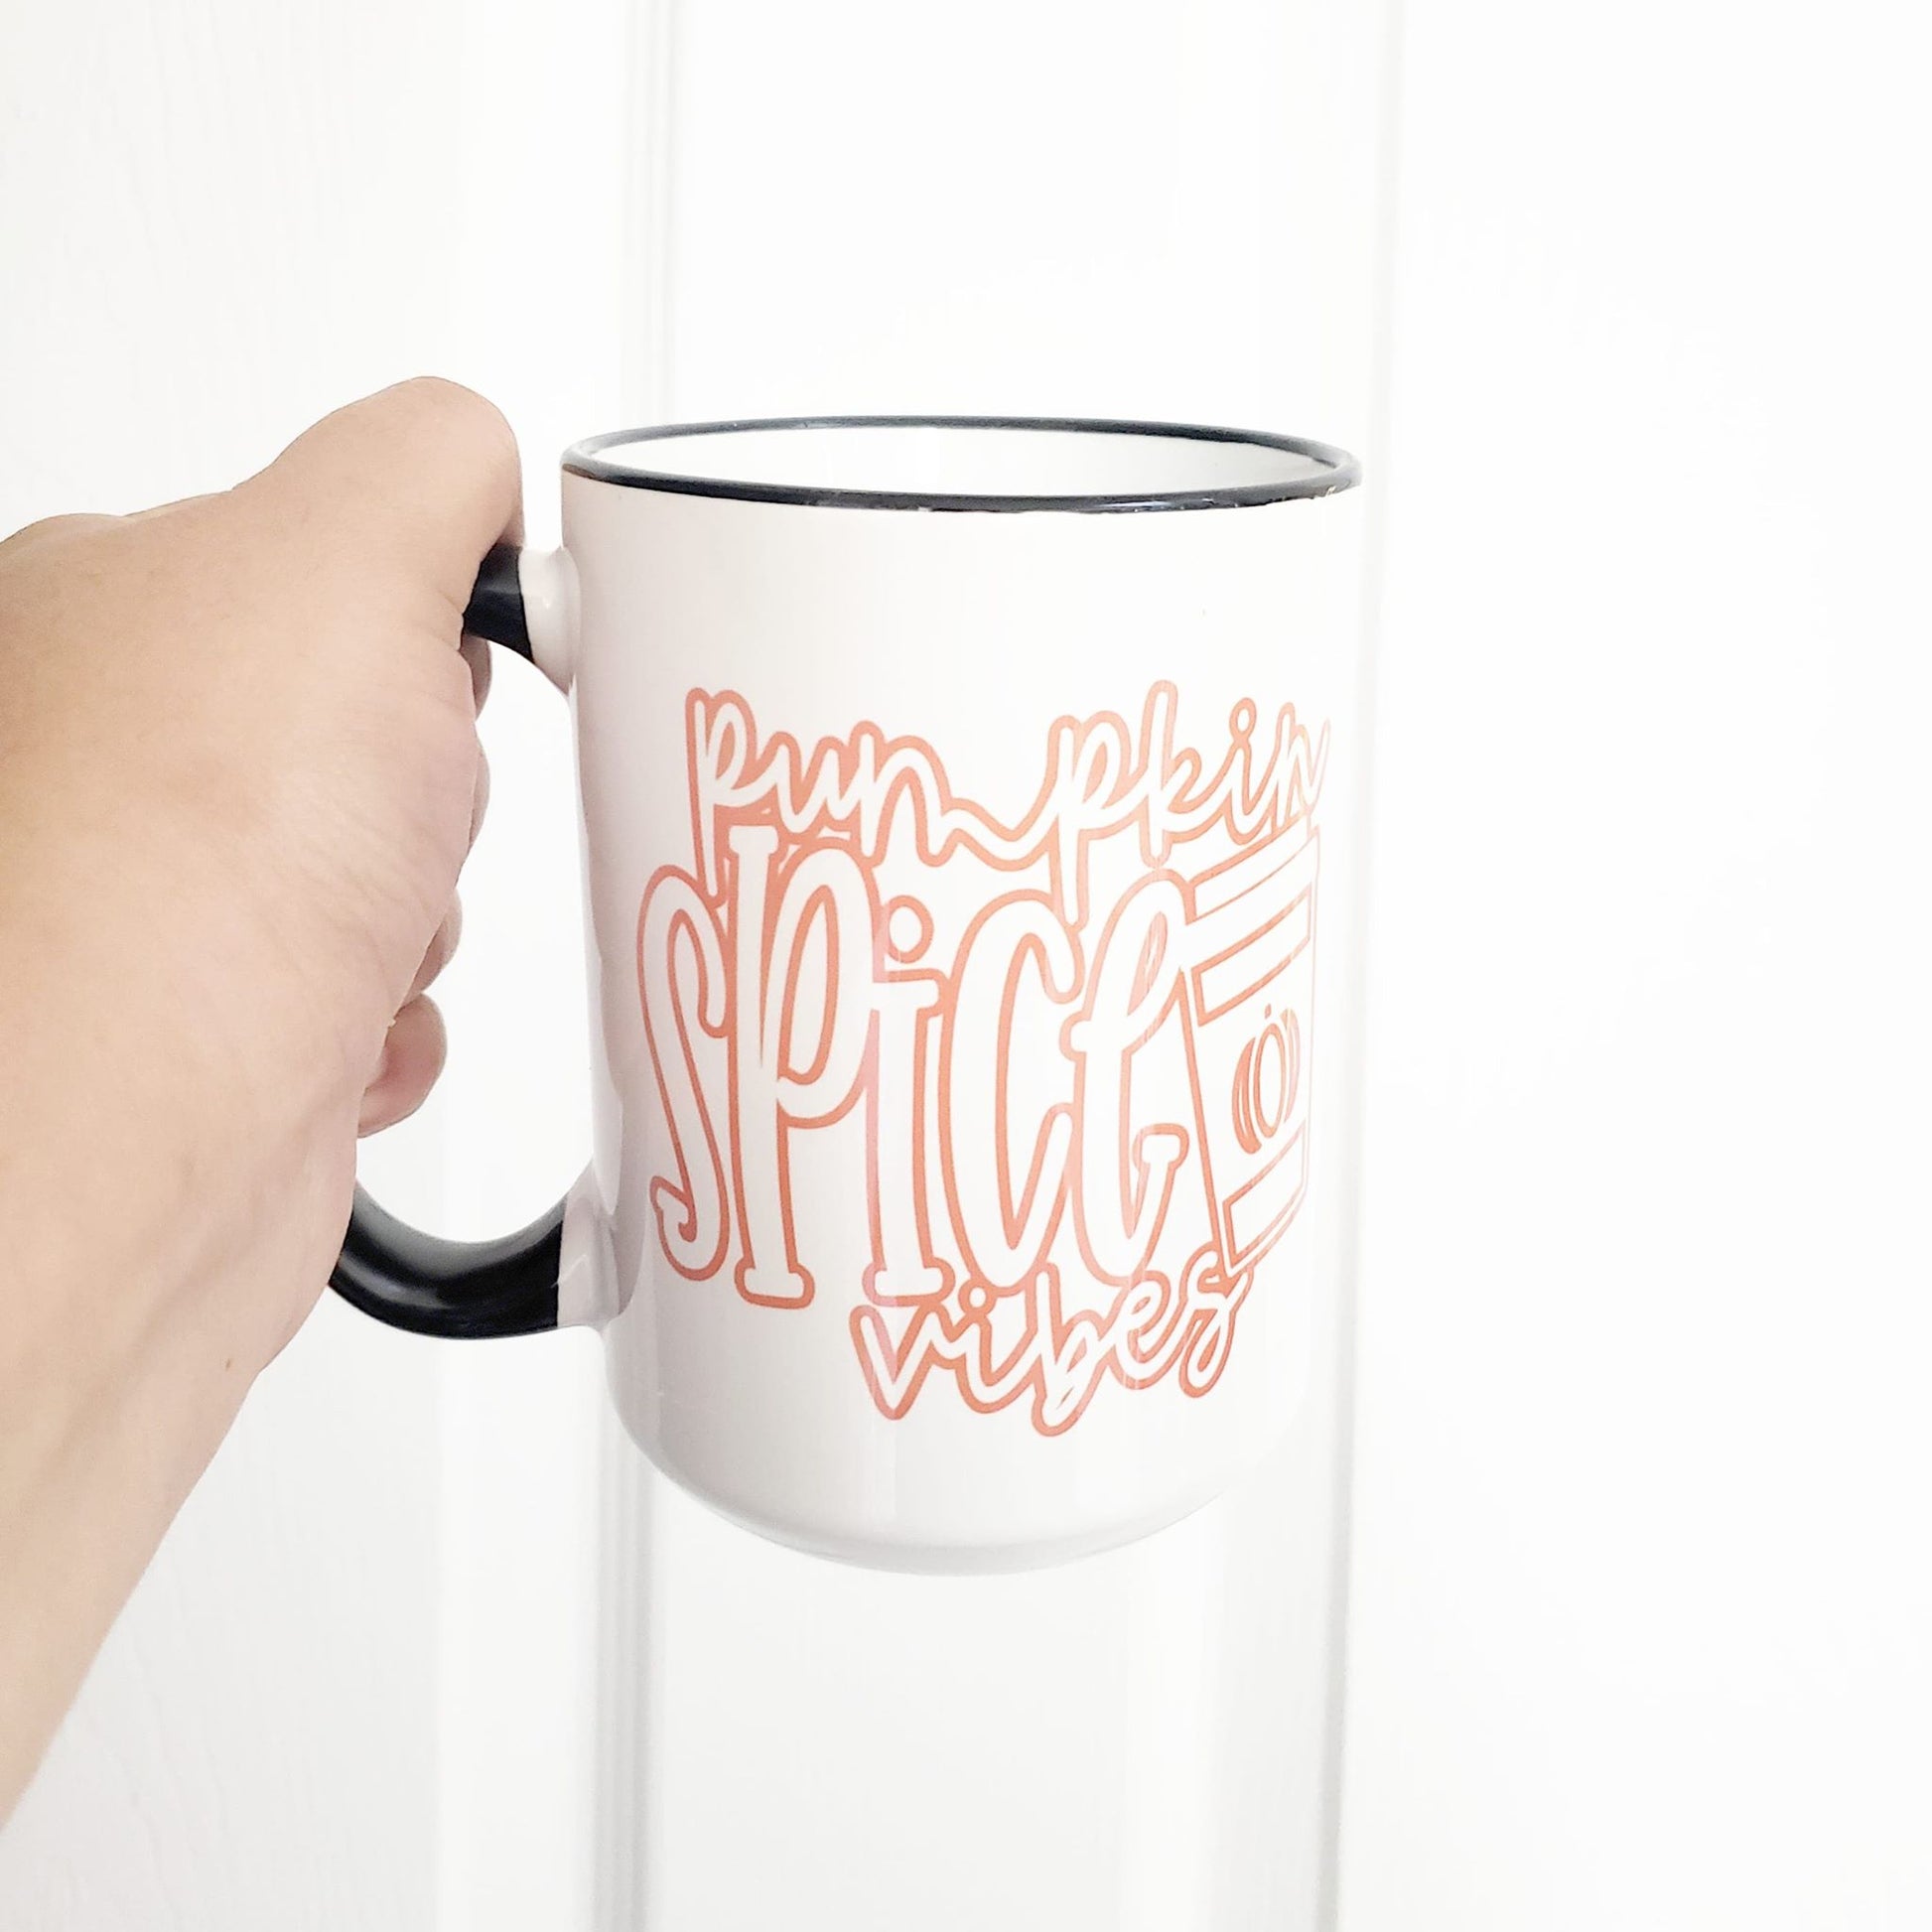 Mug, ceramic mug, pumpkin spice mugs